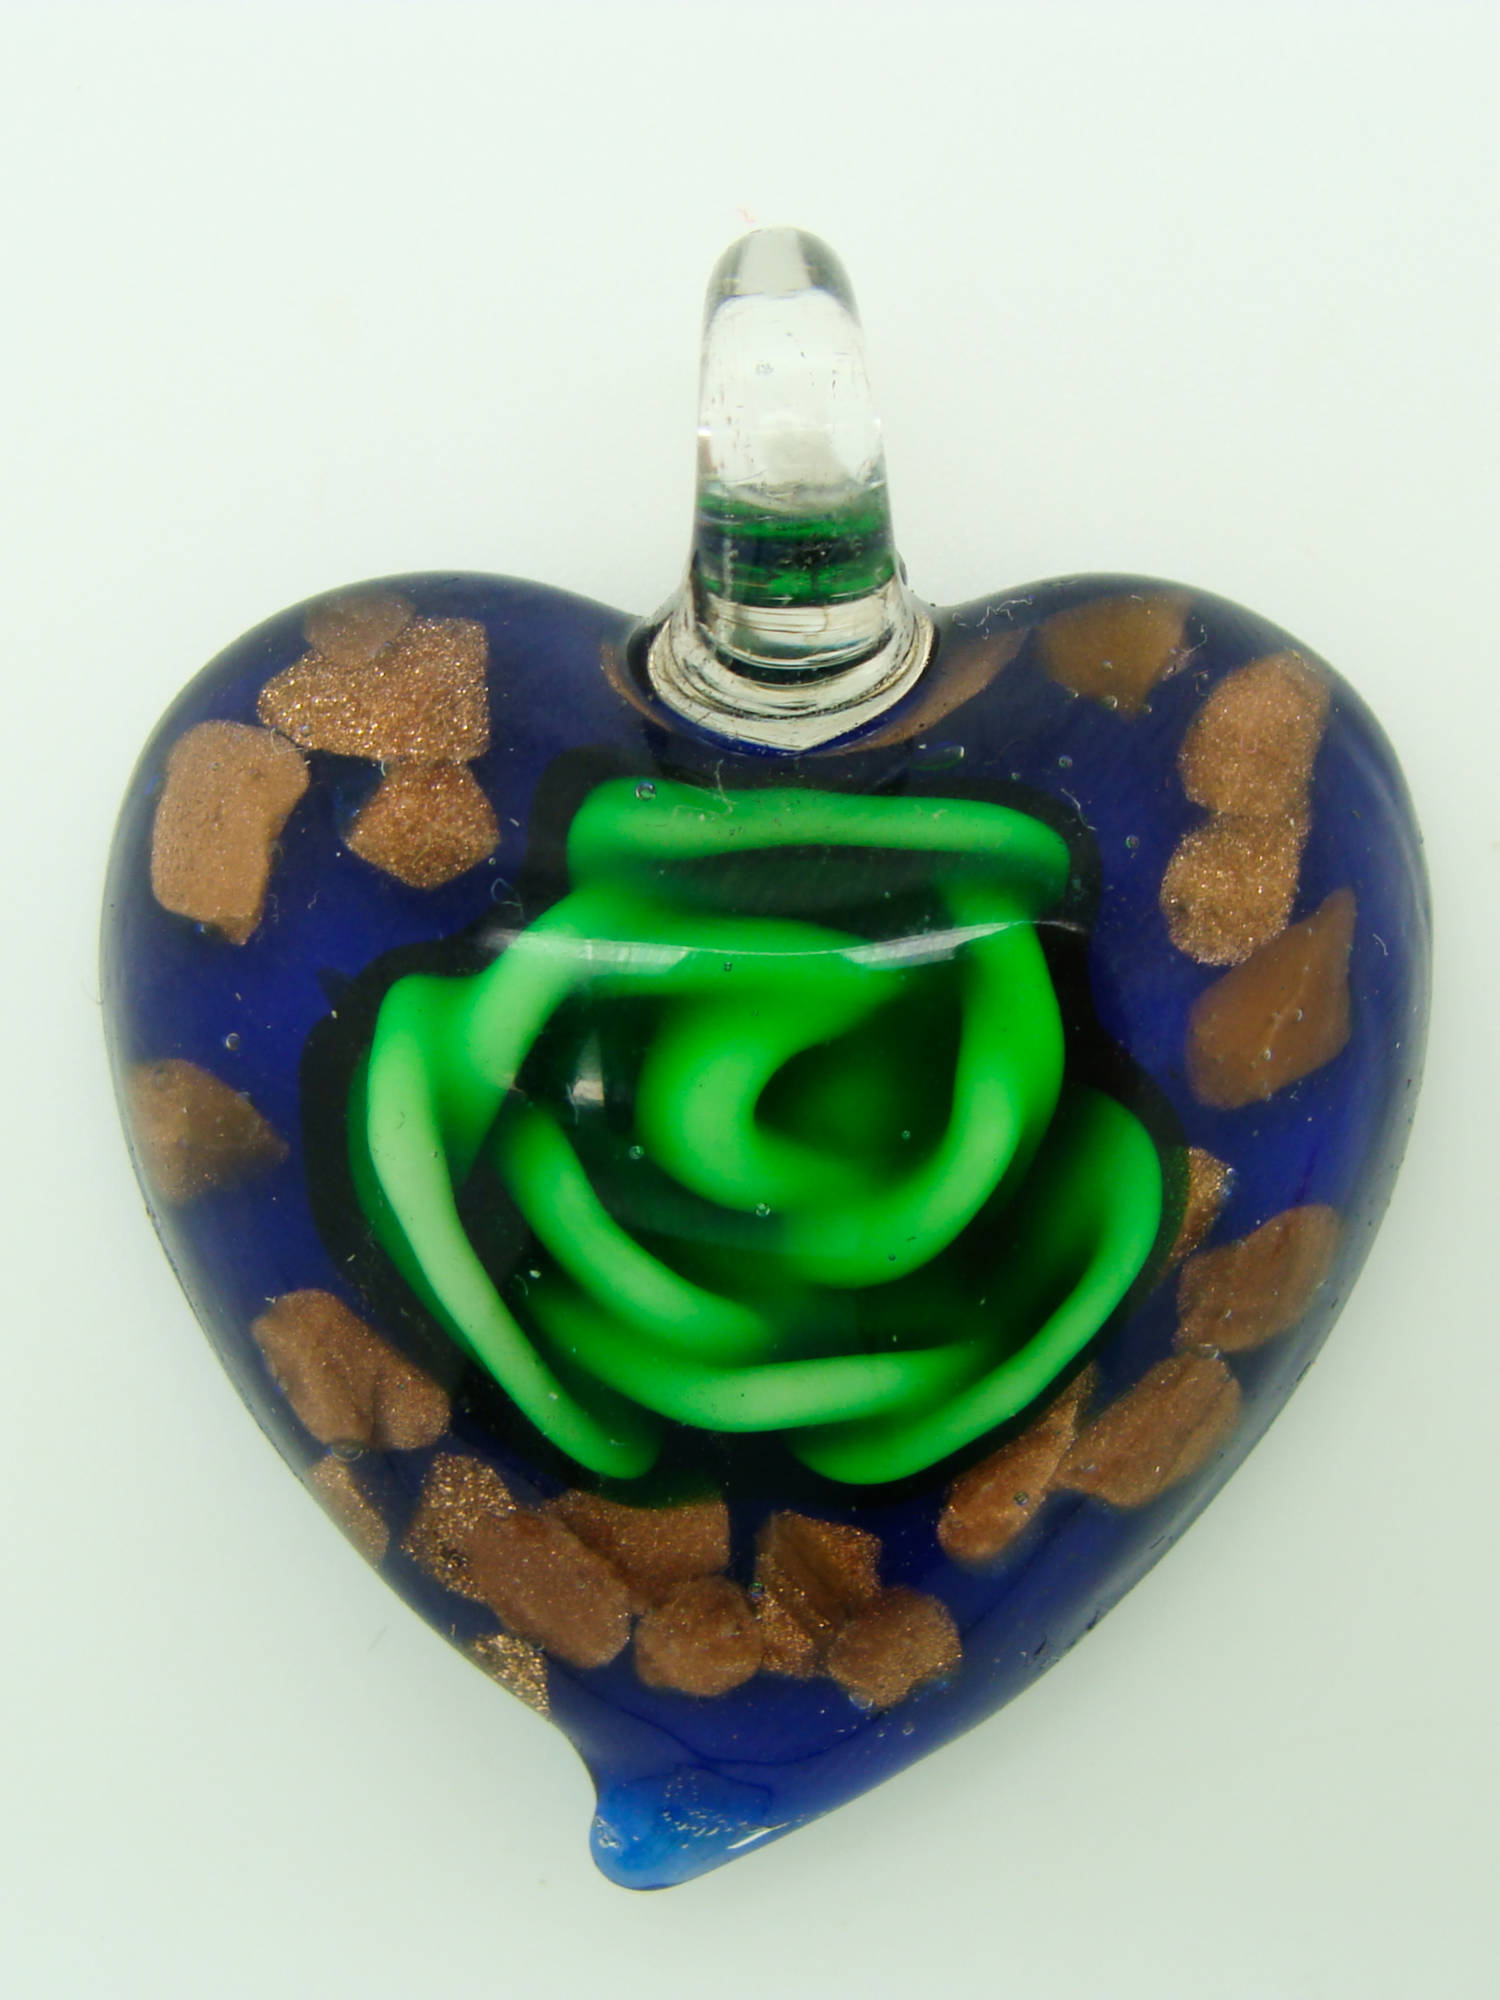 pendentif coeur marine fleur vert Pend-155